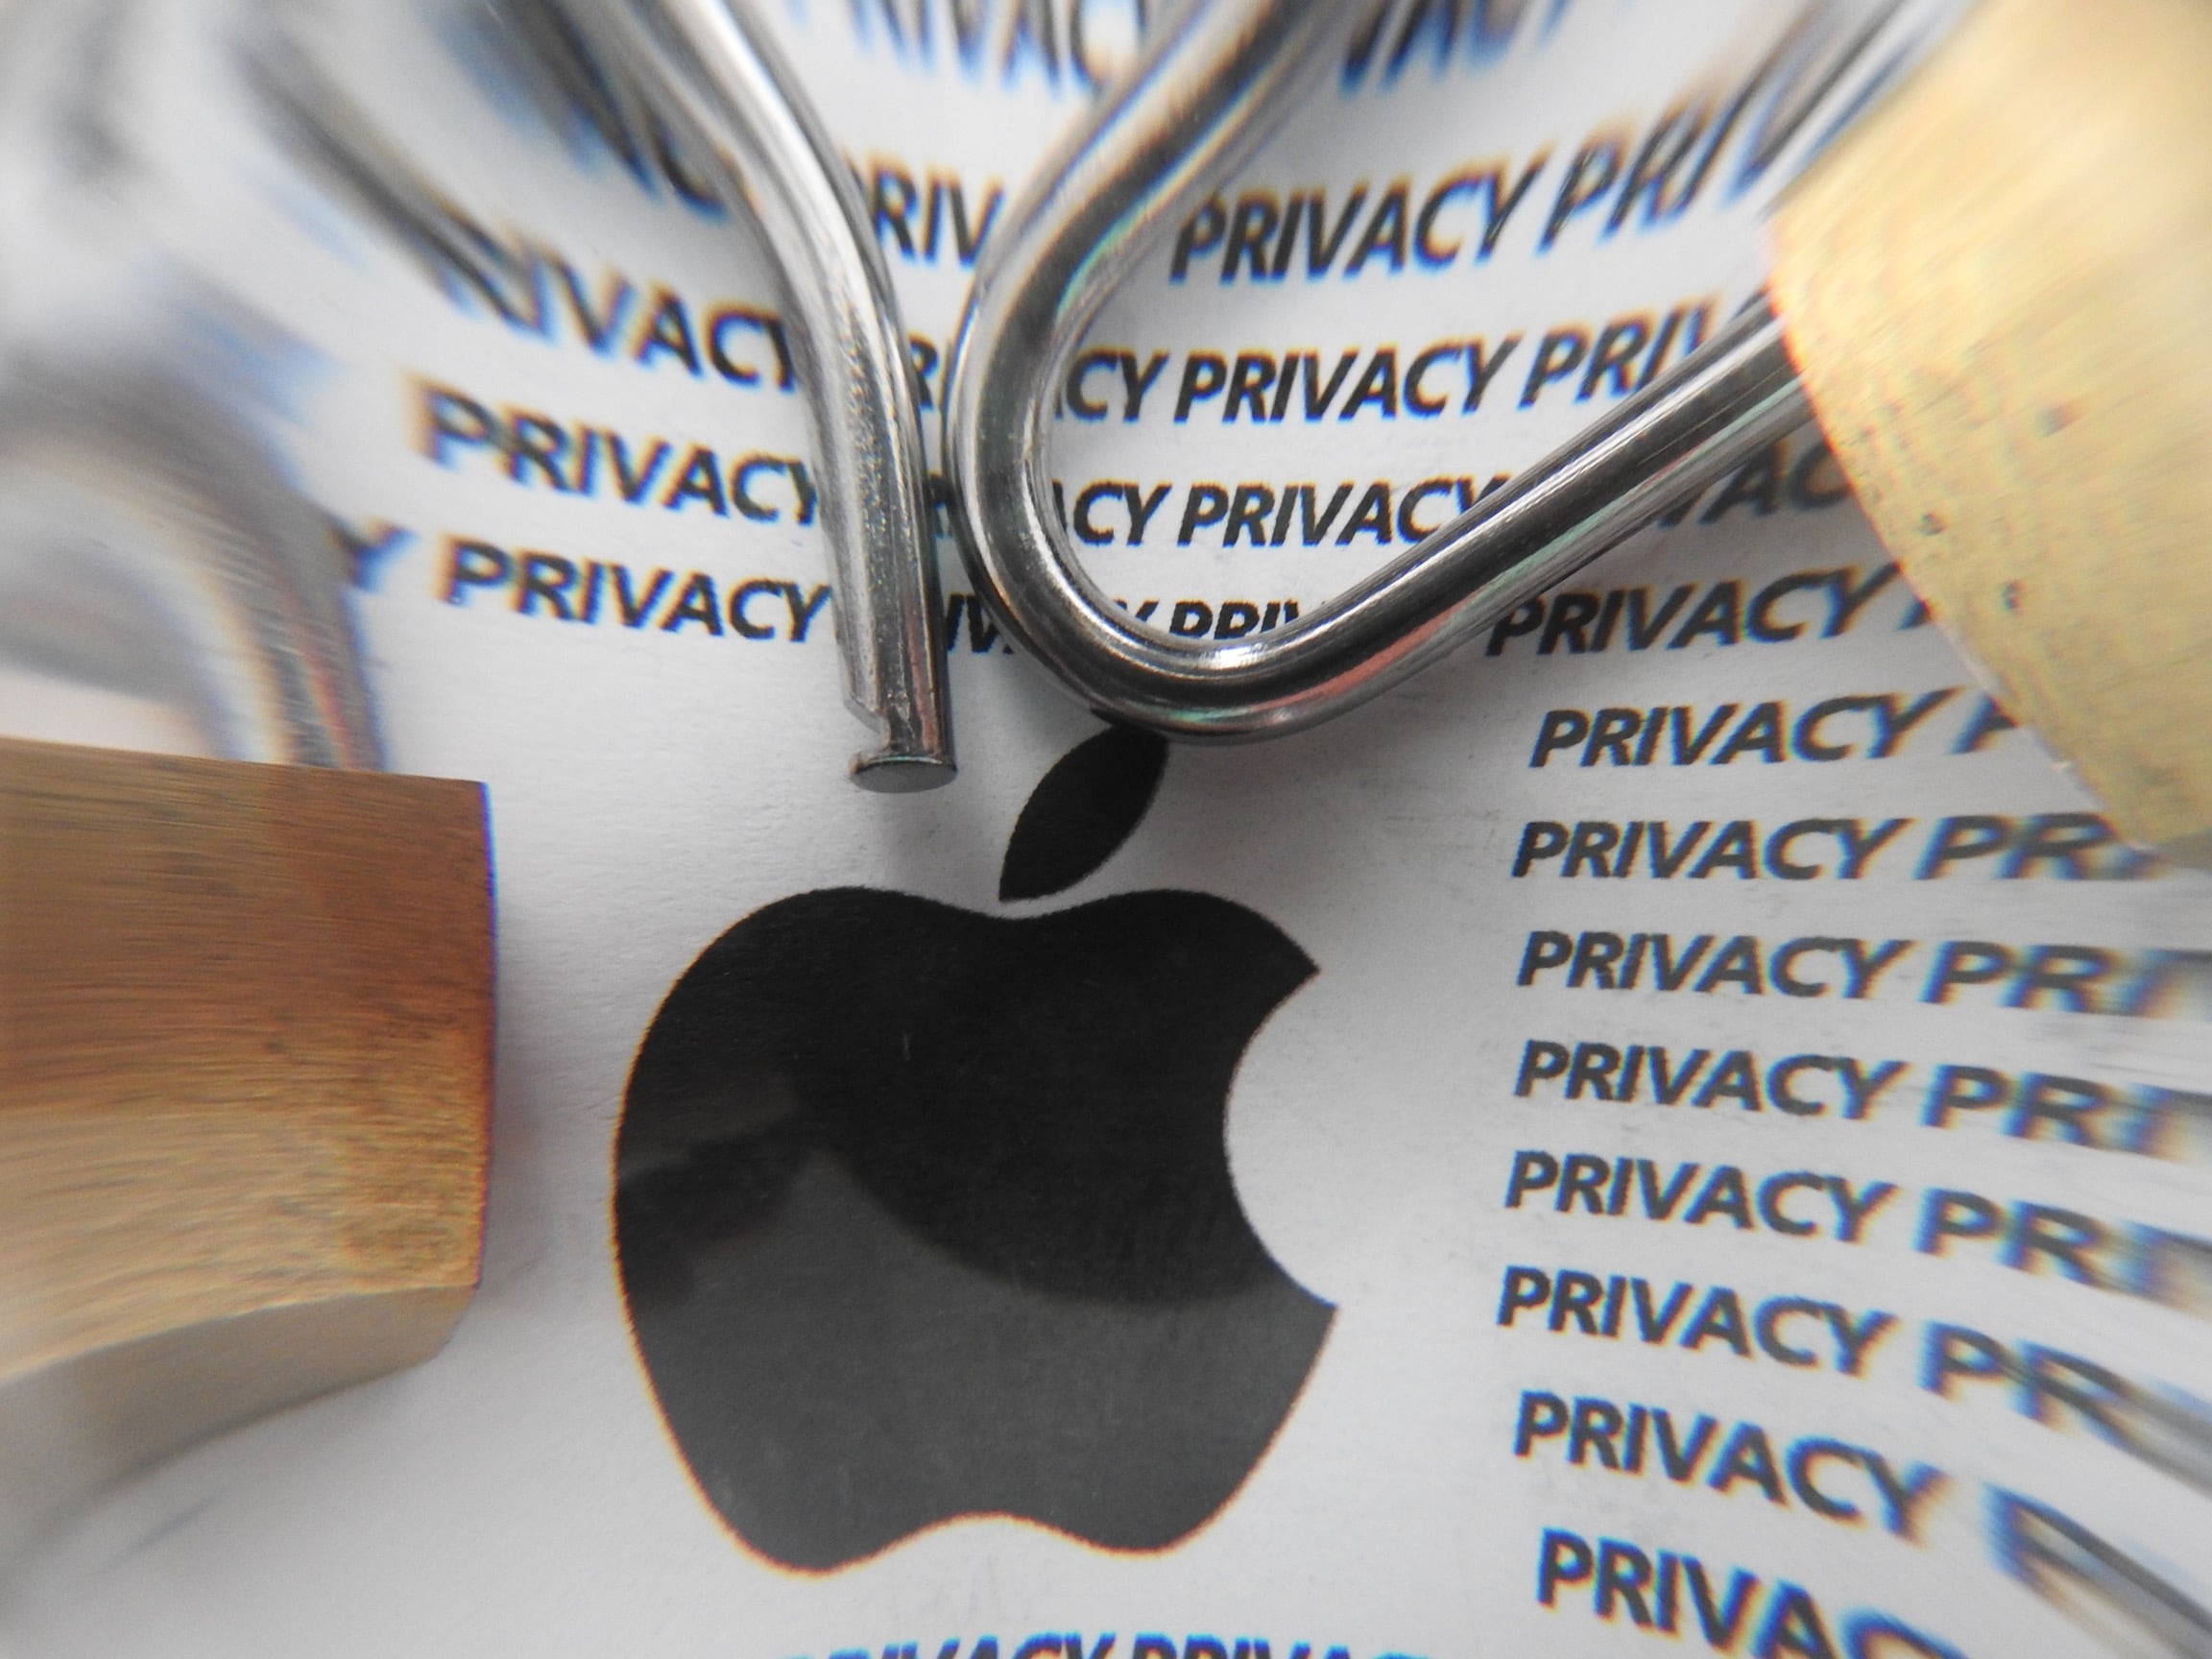 Häkkerid, kes üritasid Apple'i väljapressida, mõisteti kaheks aastaks vangi